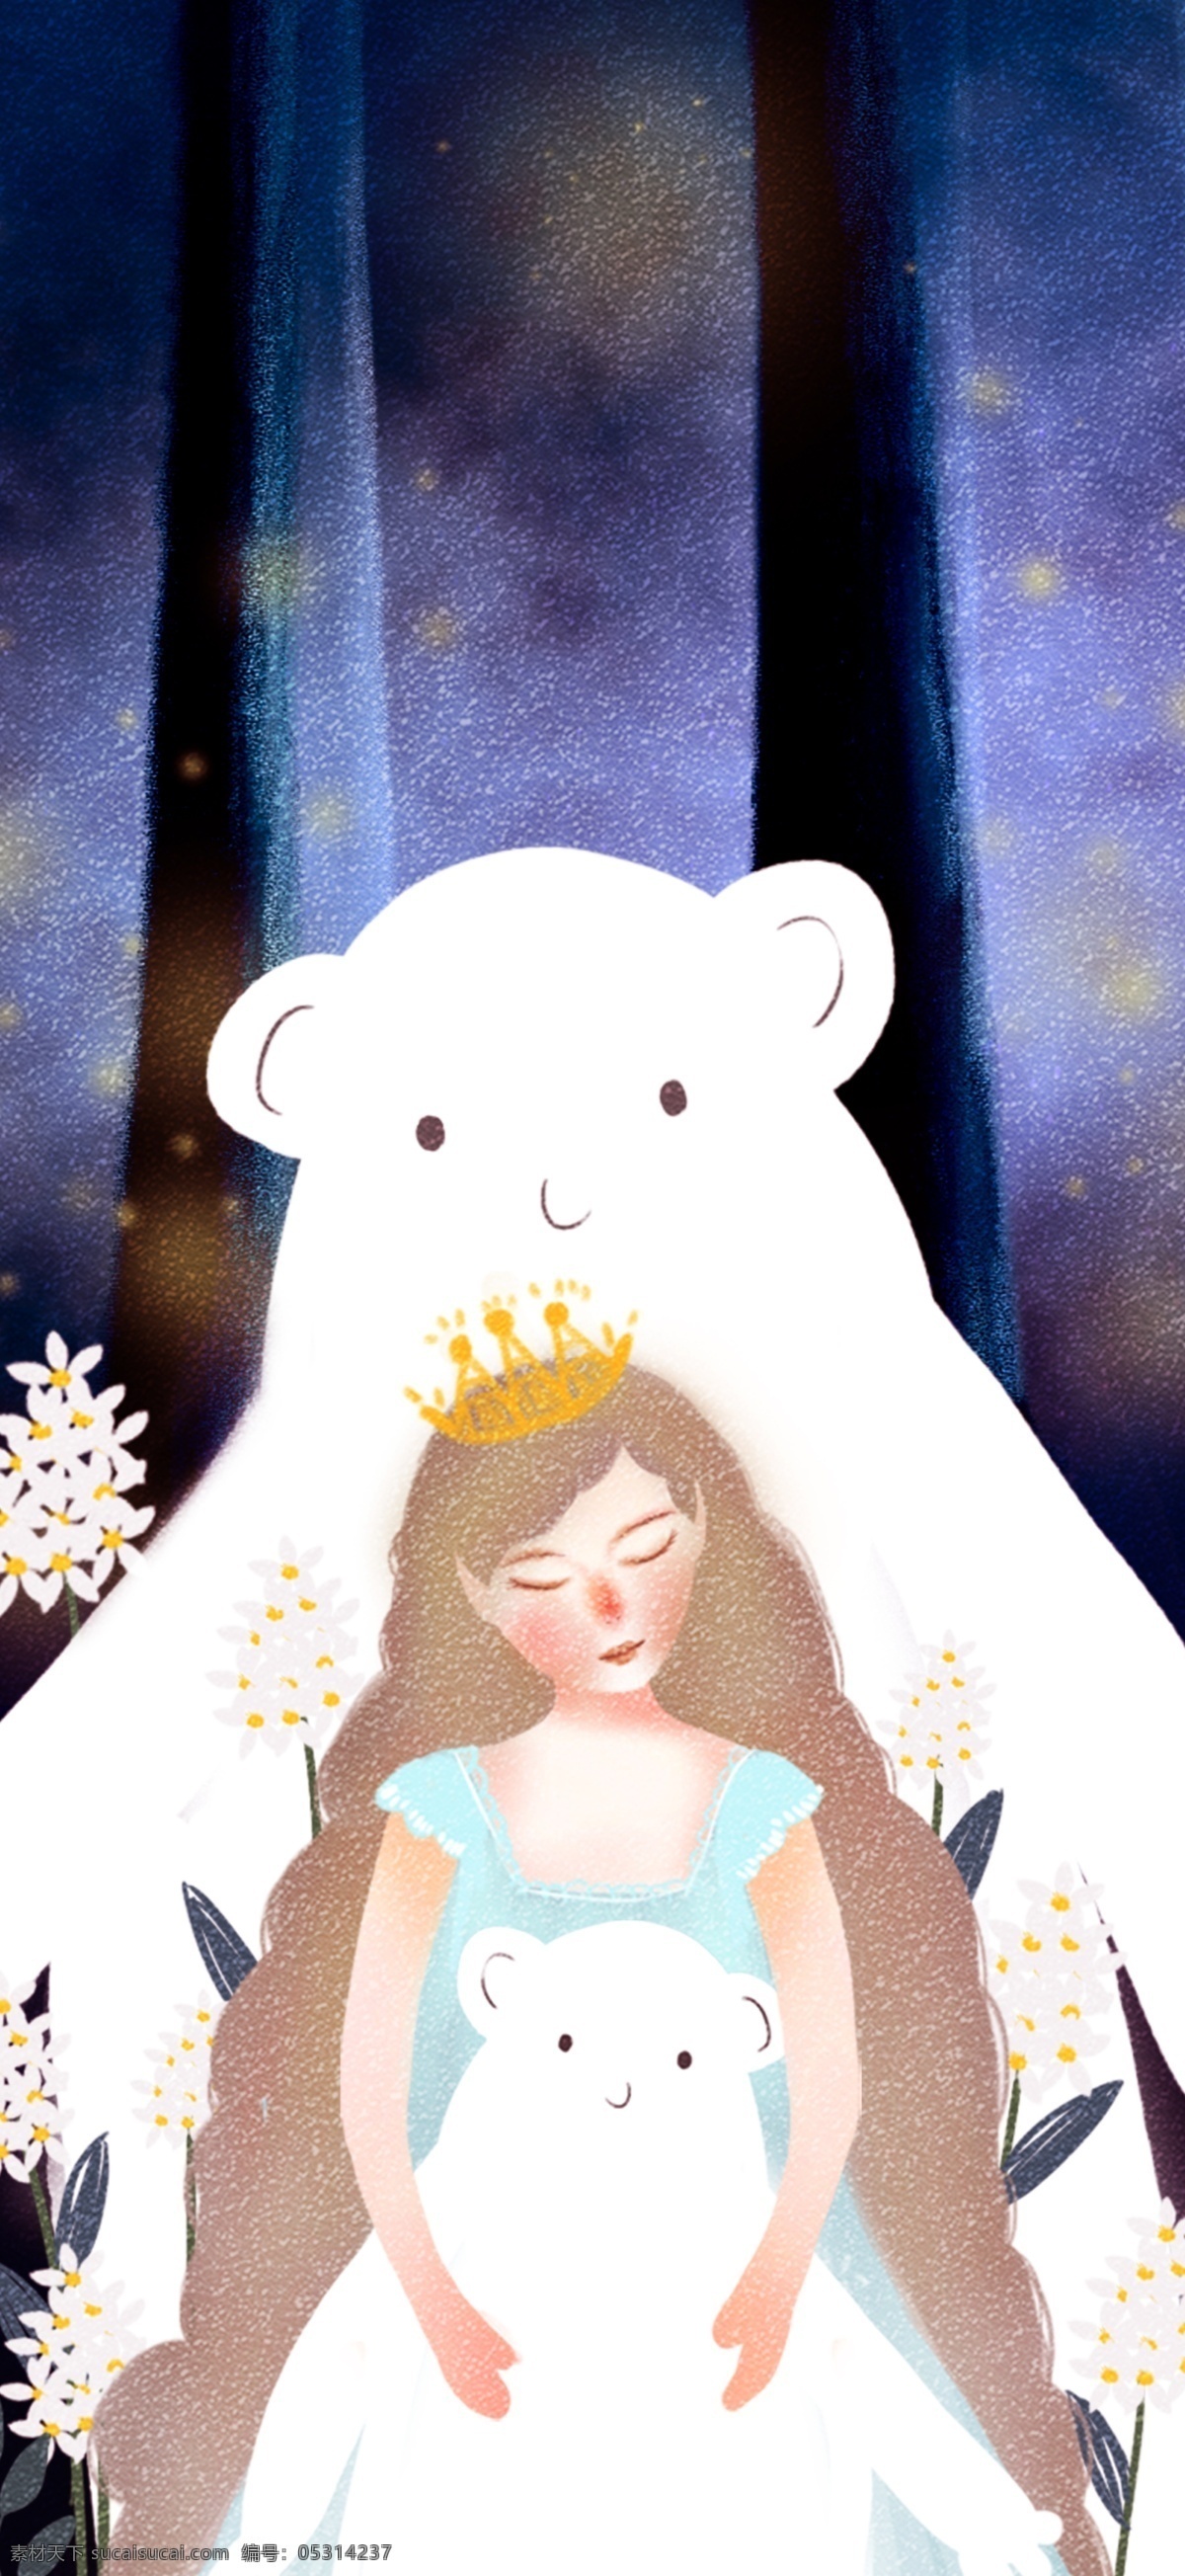 森林 公主 抱 熊 小女孩 唯美 梦幻 原创 插画 原创插画